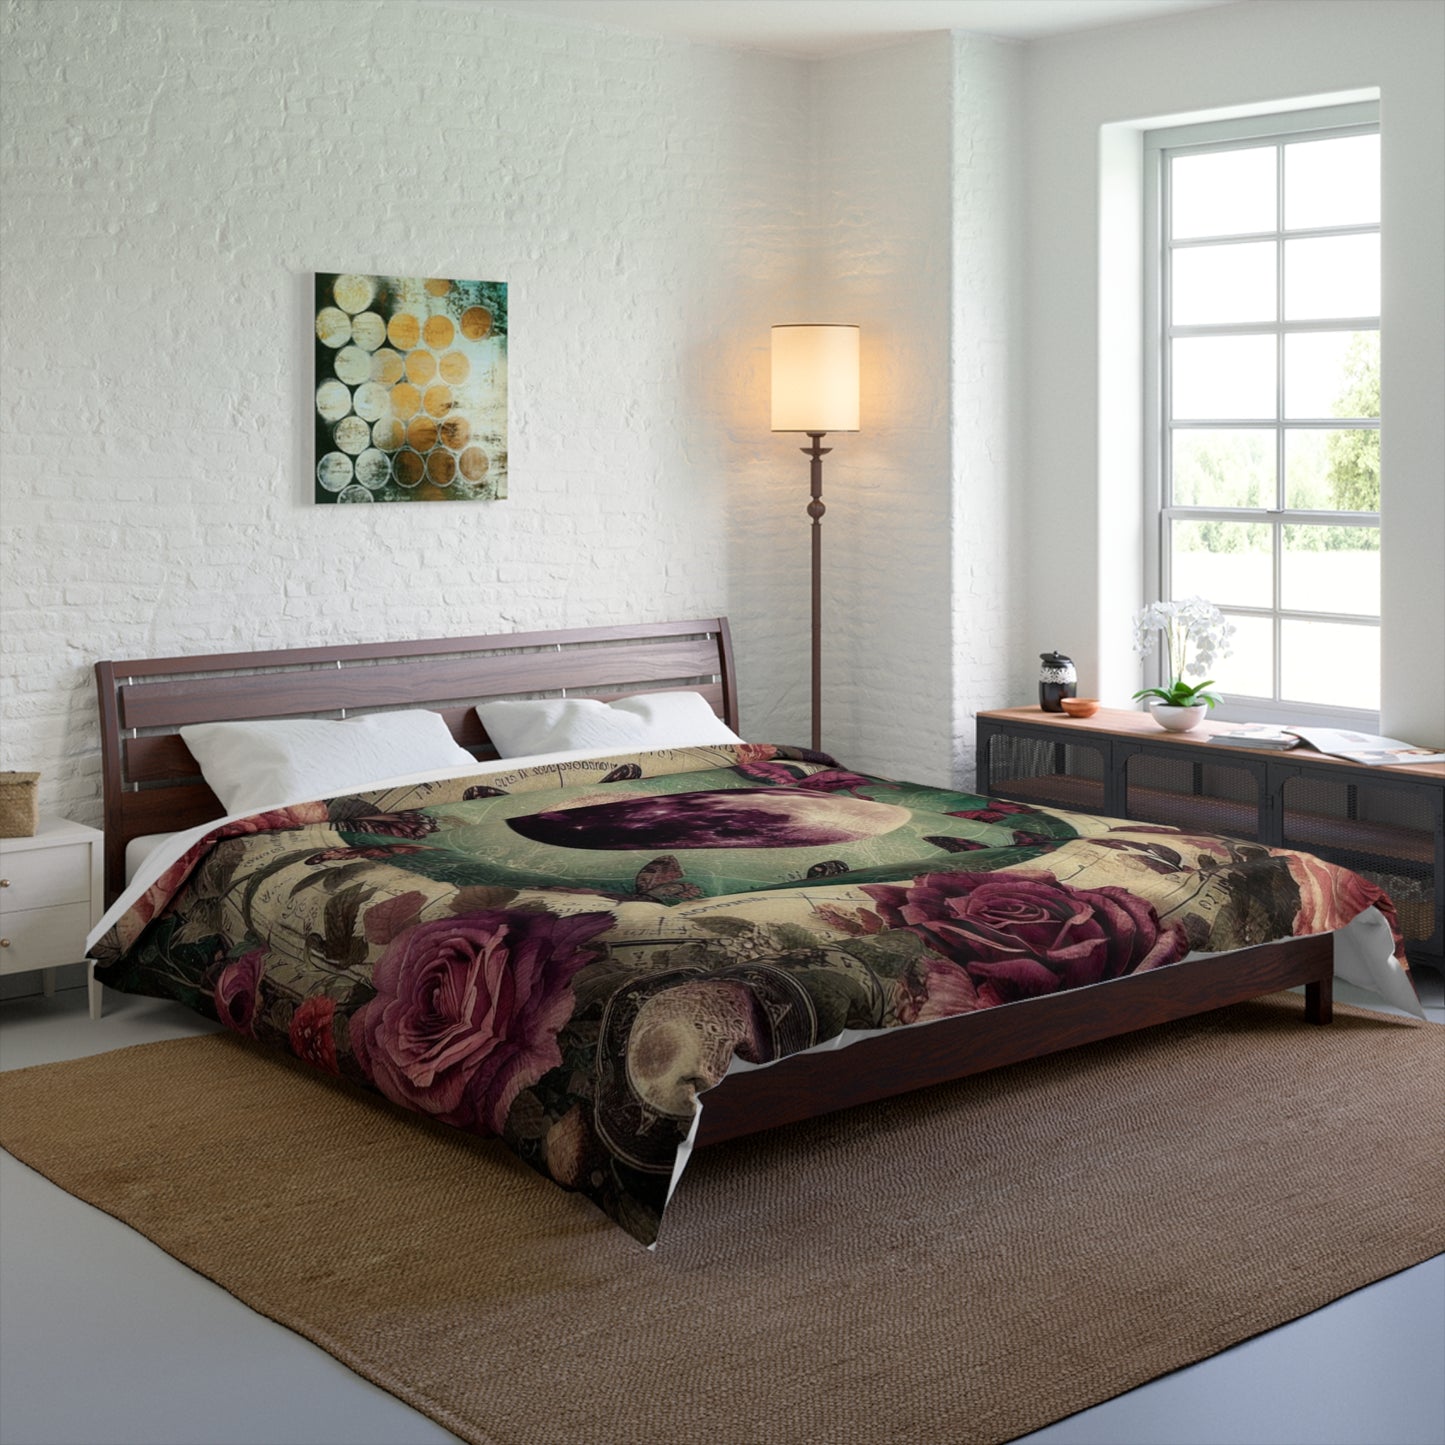 Comforter Blanket Bundle for Dark Cottagecore Décor, Floral Comforter Set